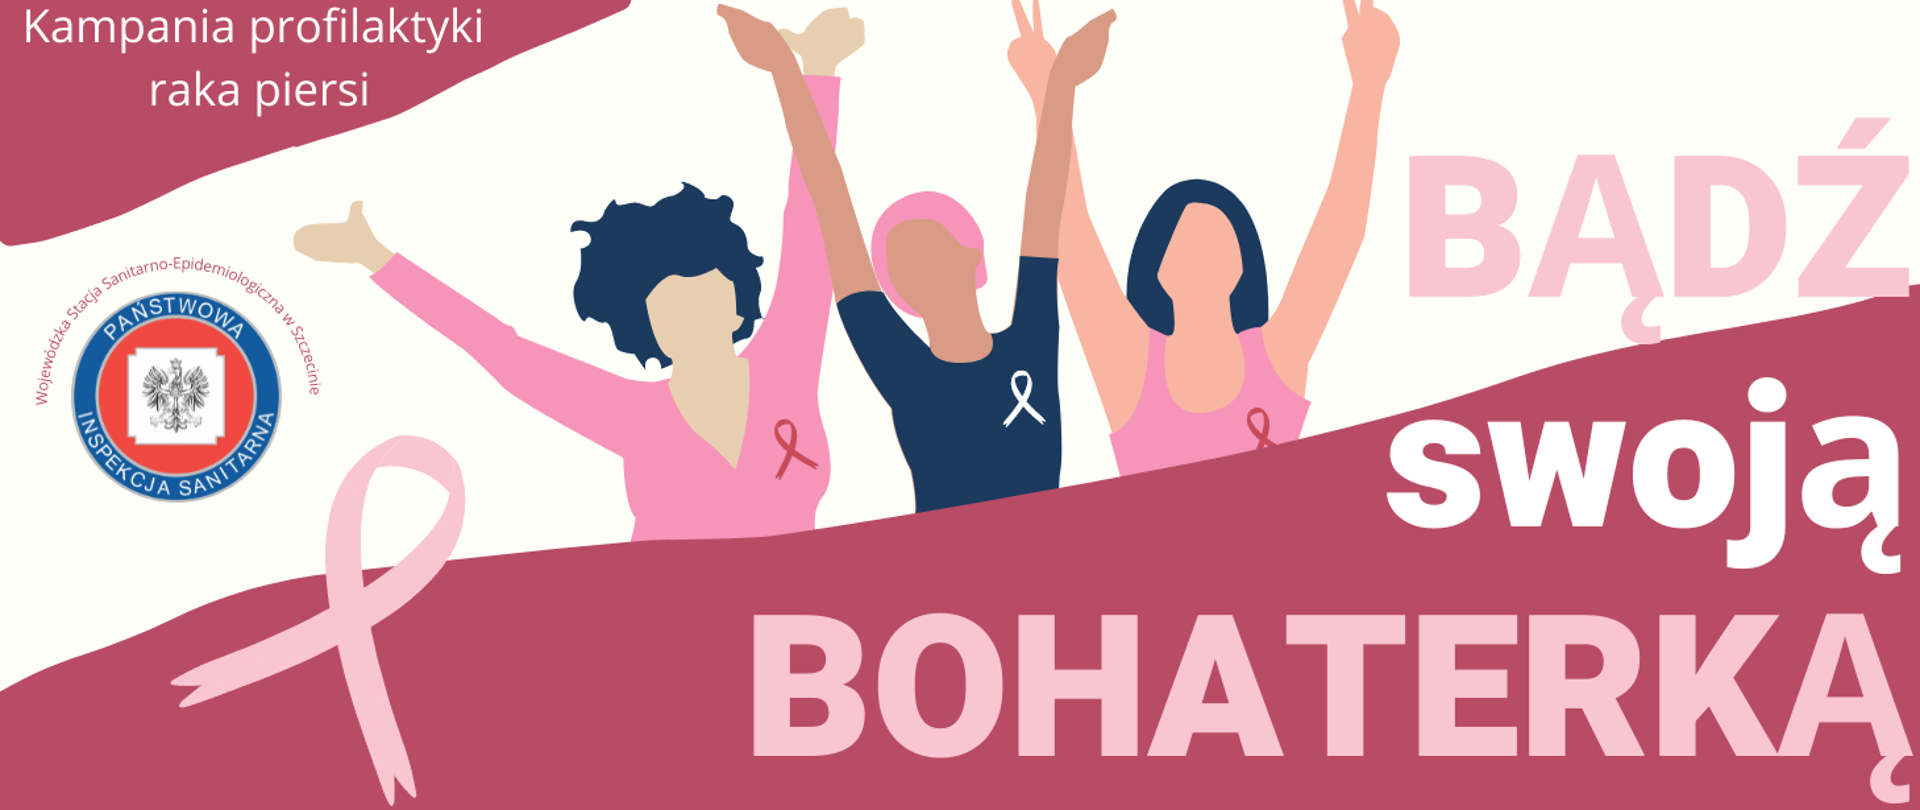 Kampania profilaktyki raka piersi „Bądź swoją bohaterką!” 